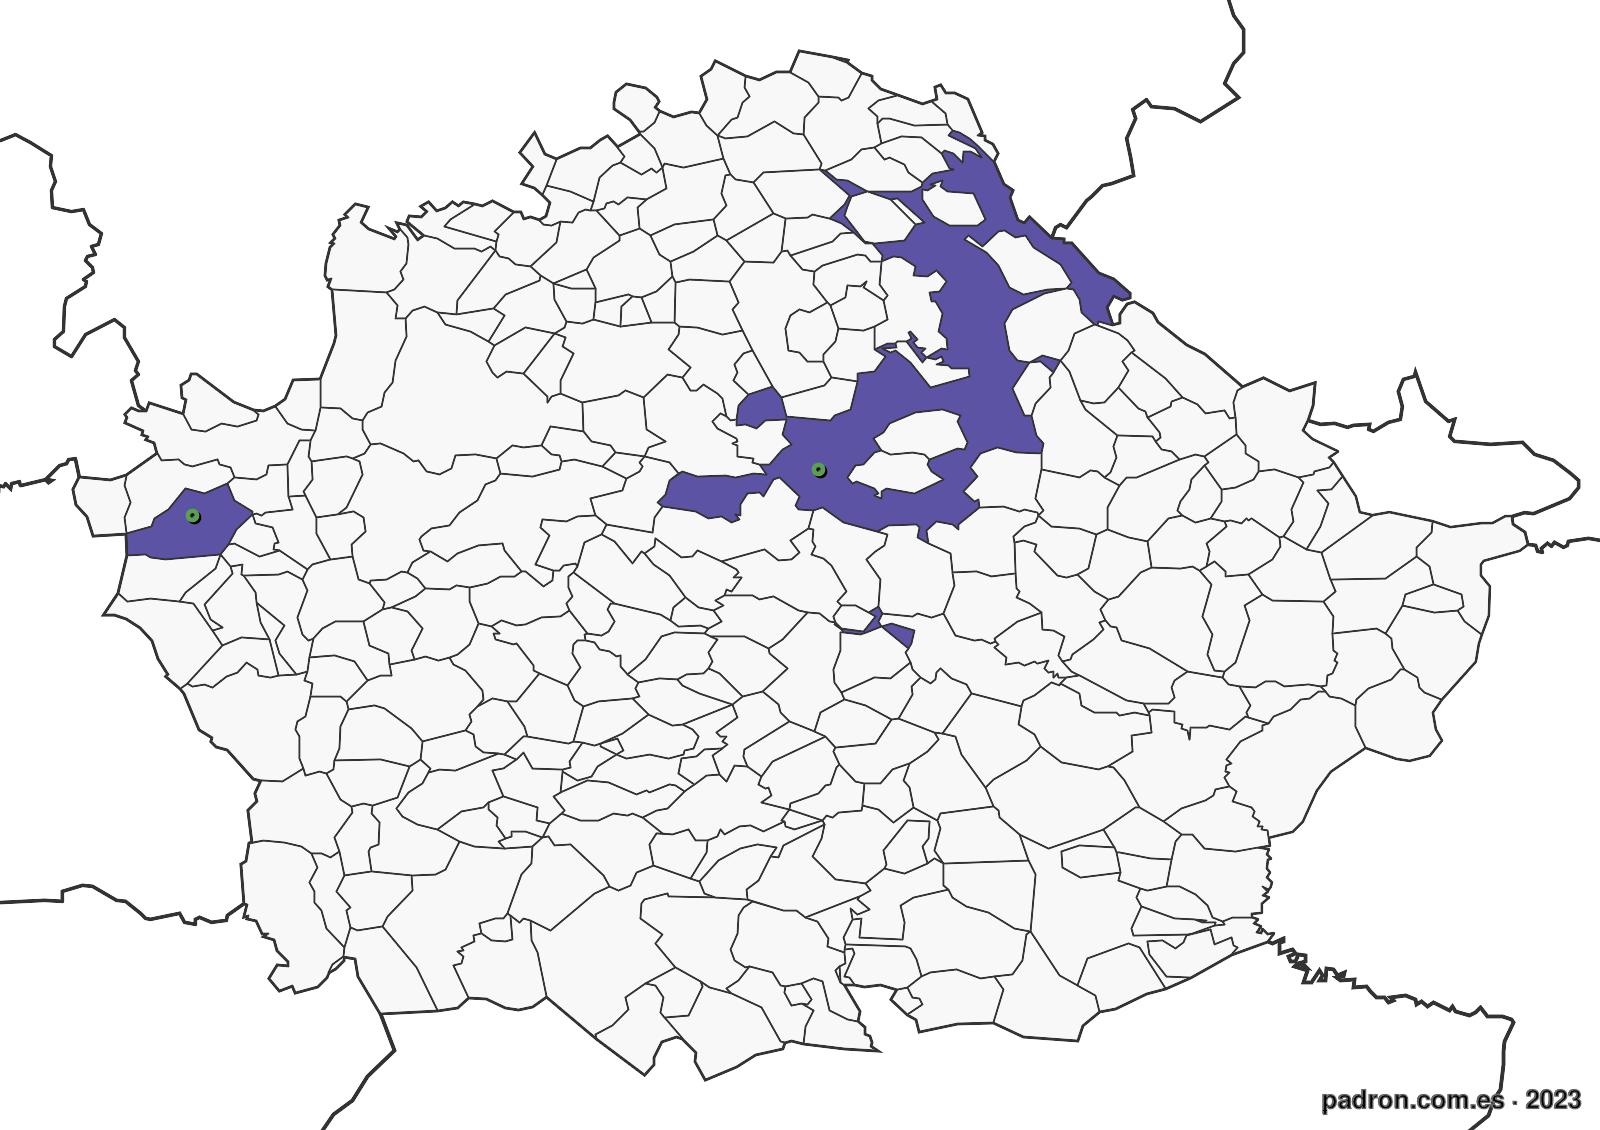 húngaros en cuenca.